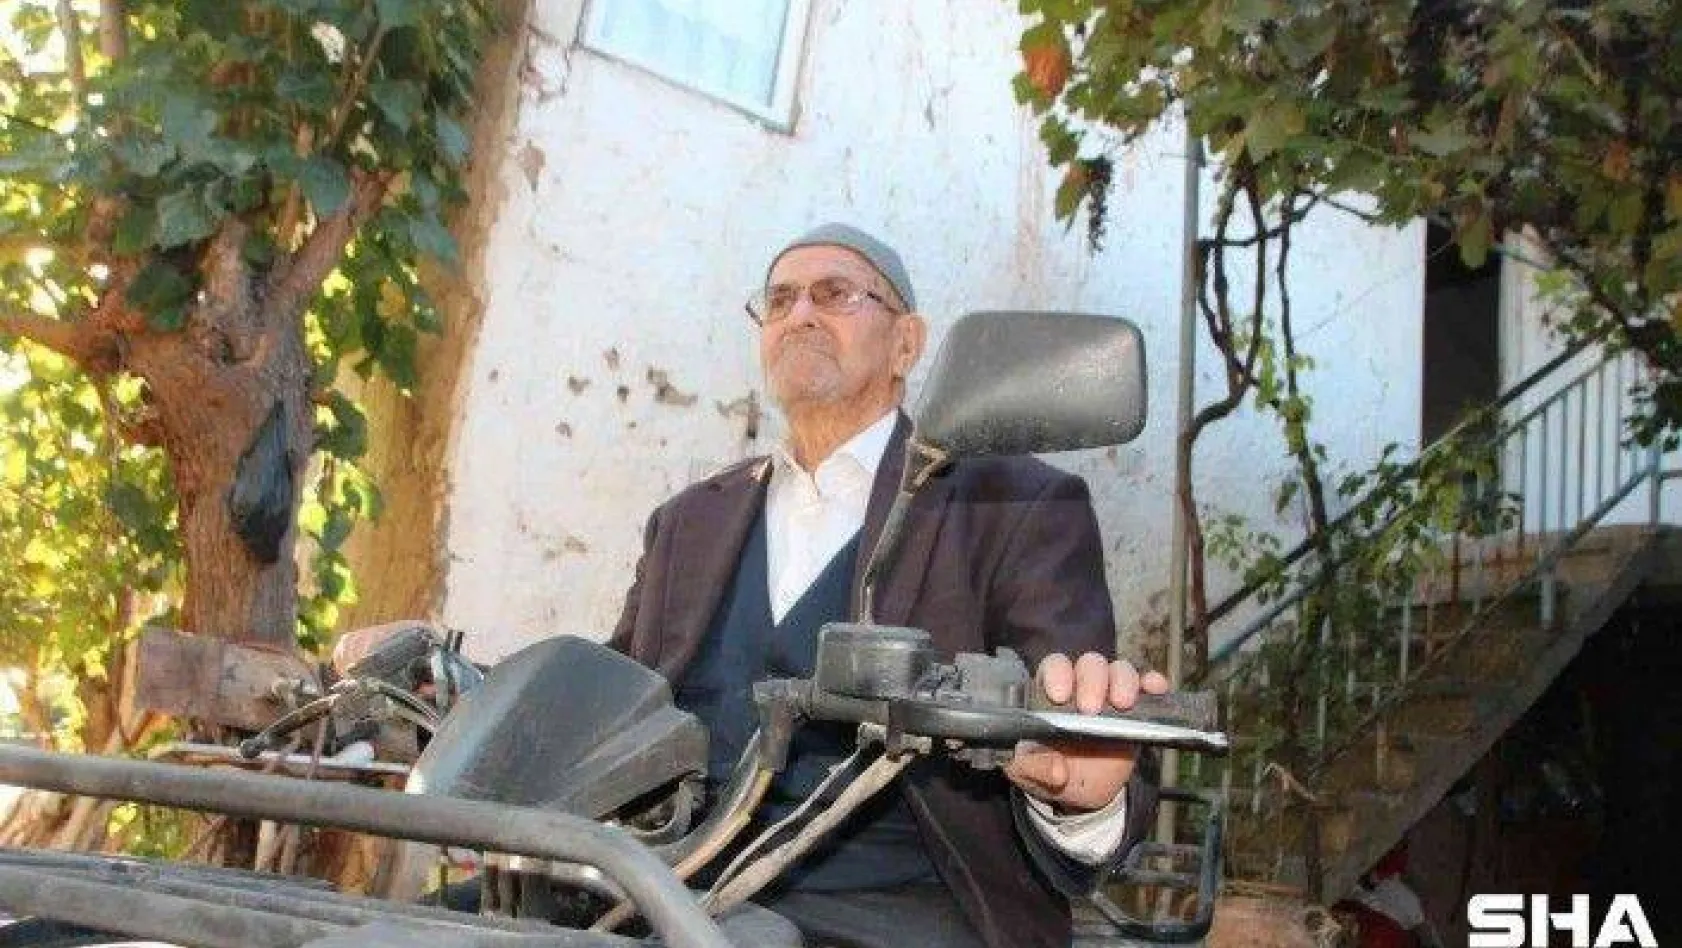 (Özel) 92 yaşındaki ATV tutkunu dede her gün motoruna binmeden siliyor, ona gözü gibi bakıyor